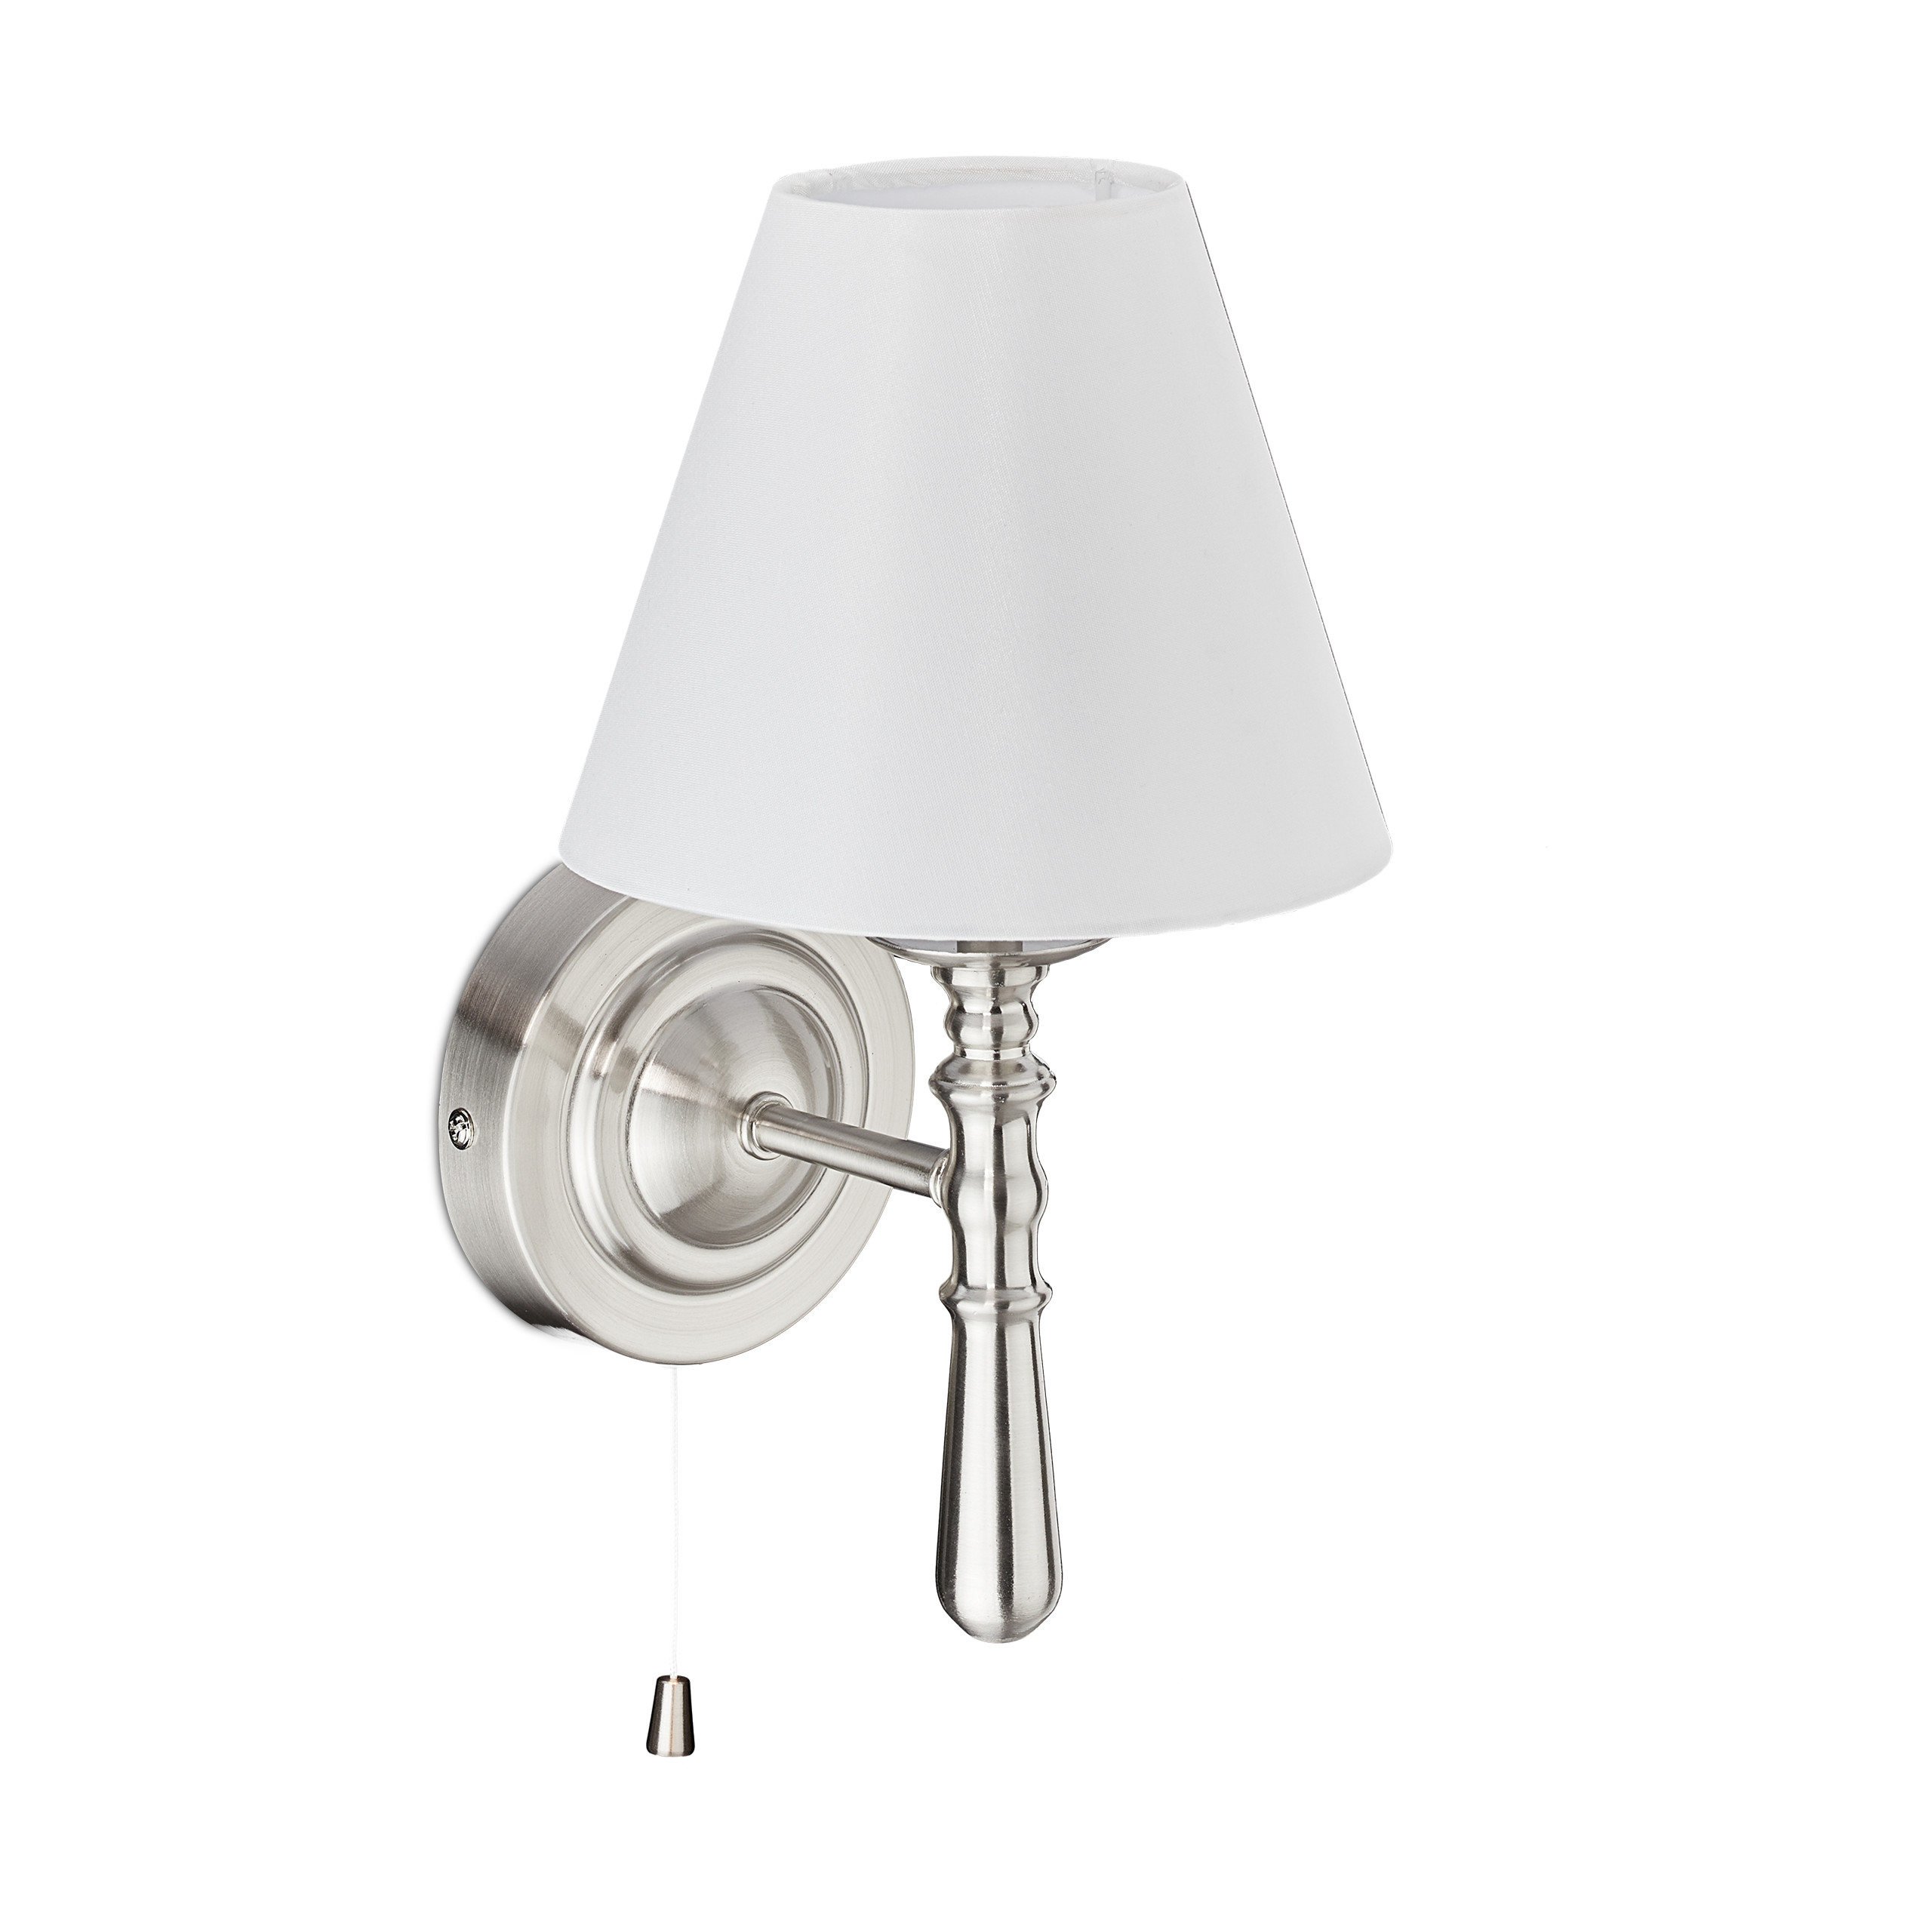 mit home24 | Wandlampe Schirm kaufen